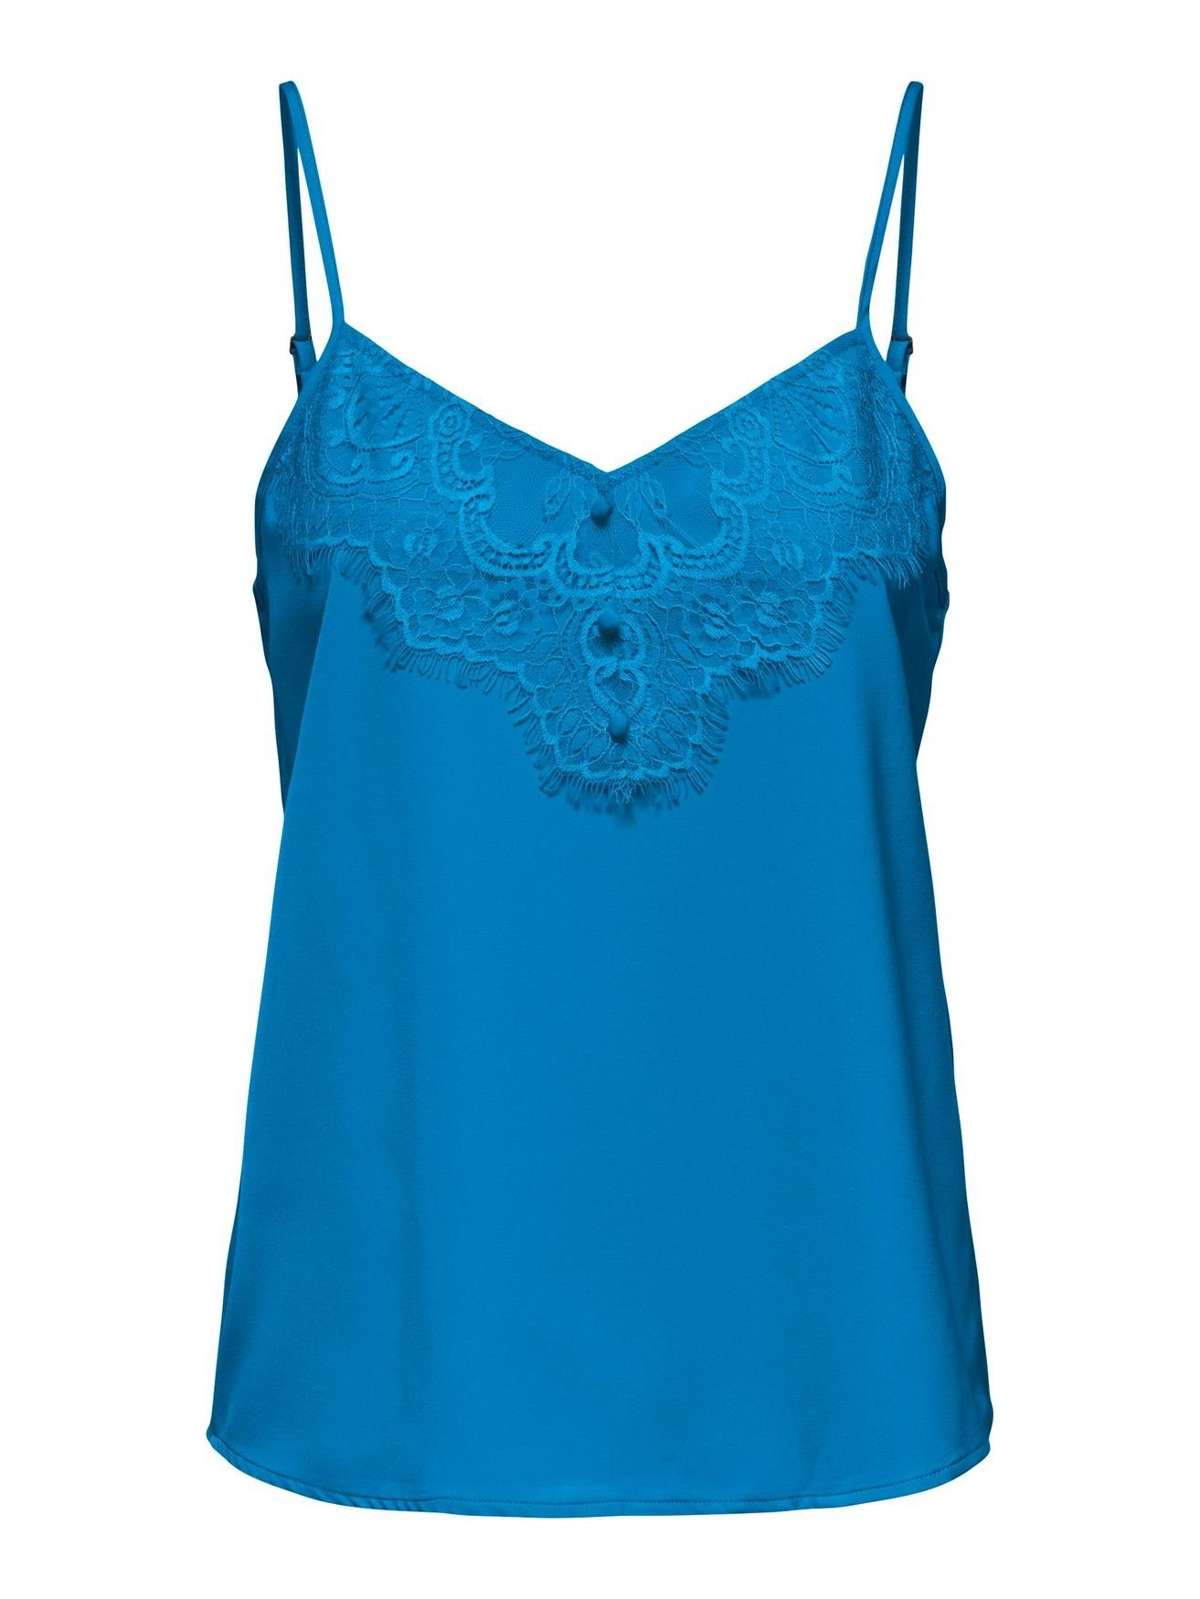 Рубашка Элегантная рубашка без рукавов с кружевным верхом синего цвета JDYSISI 4943